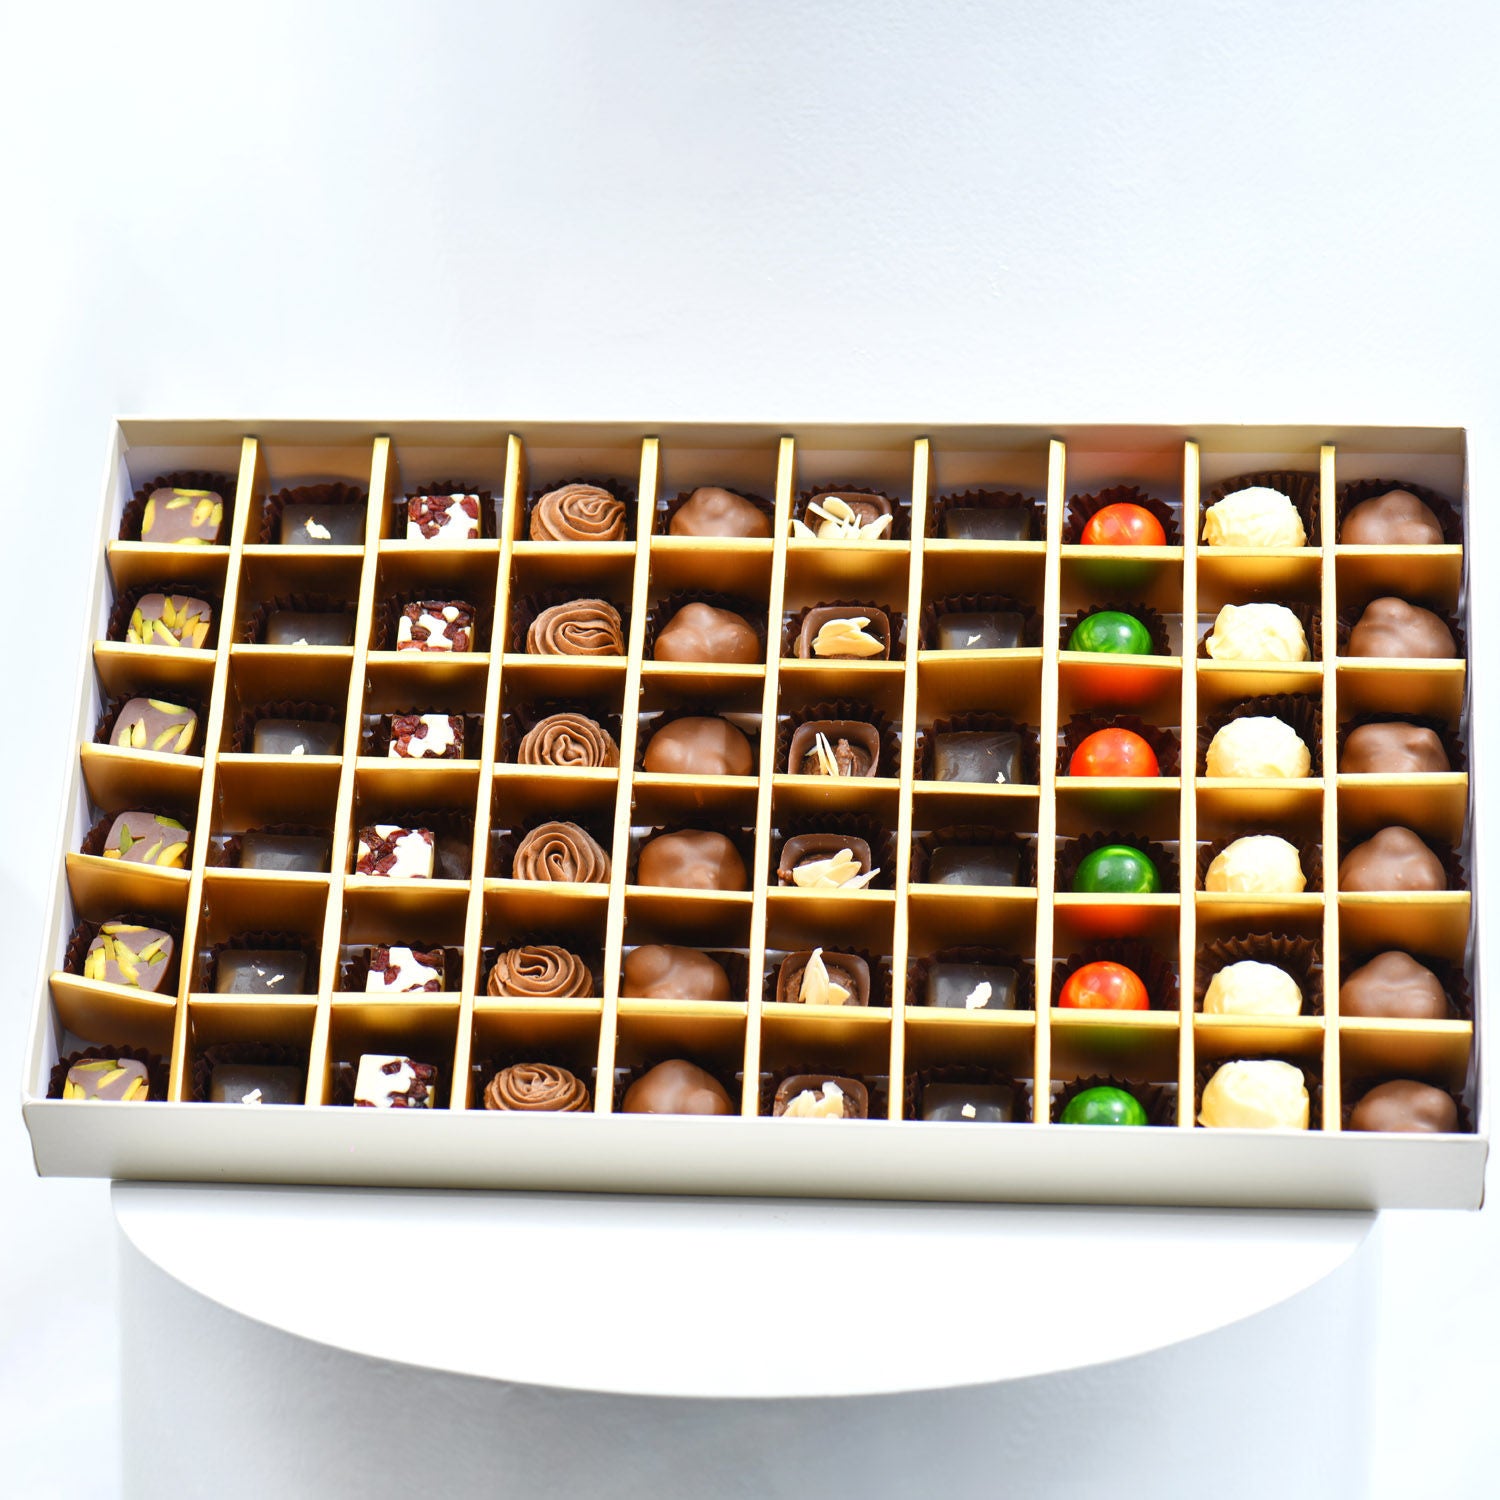 بوكس 60 قطعة شوكولاته بلجيكية فاخرة مع باقة ورود